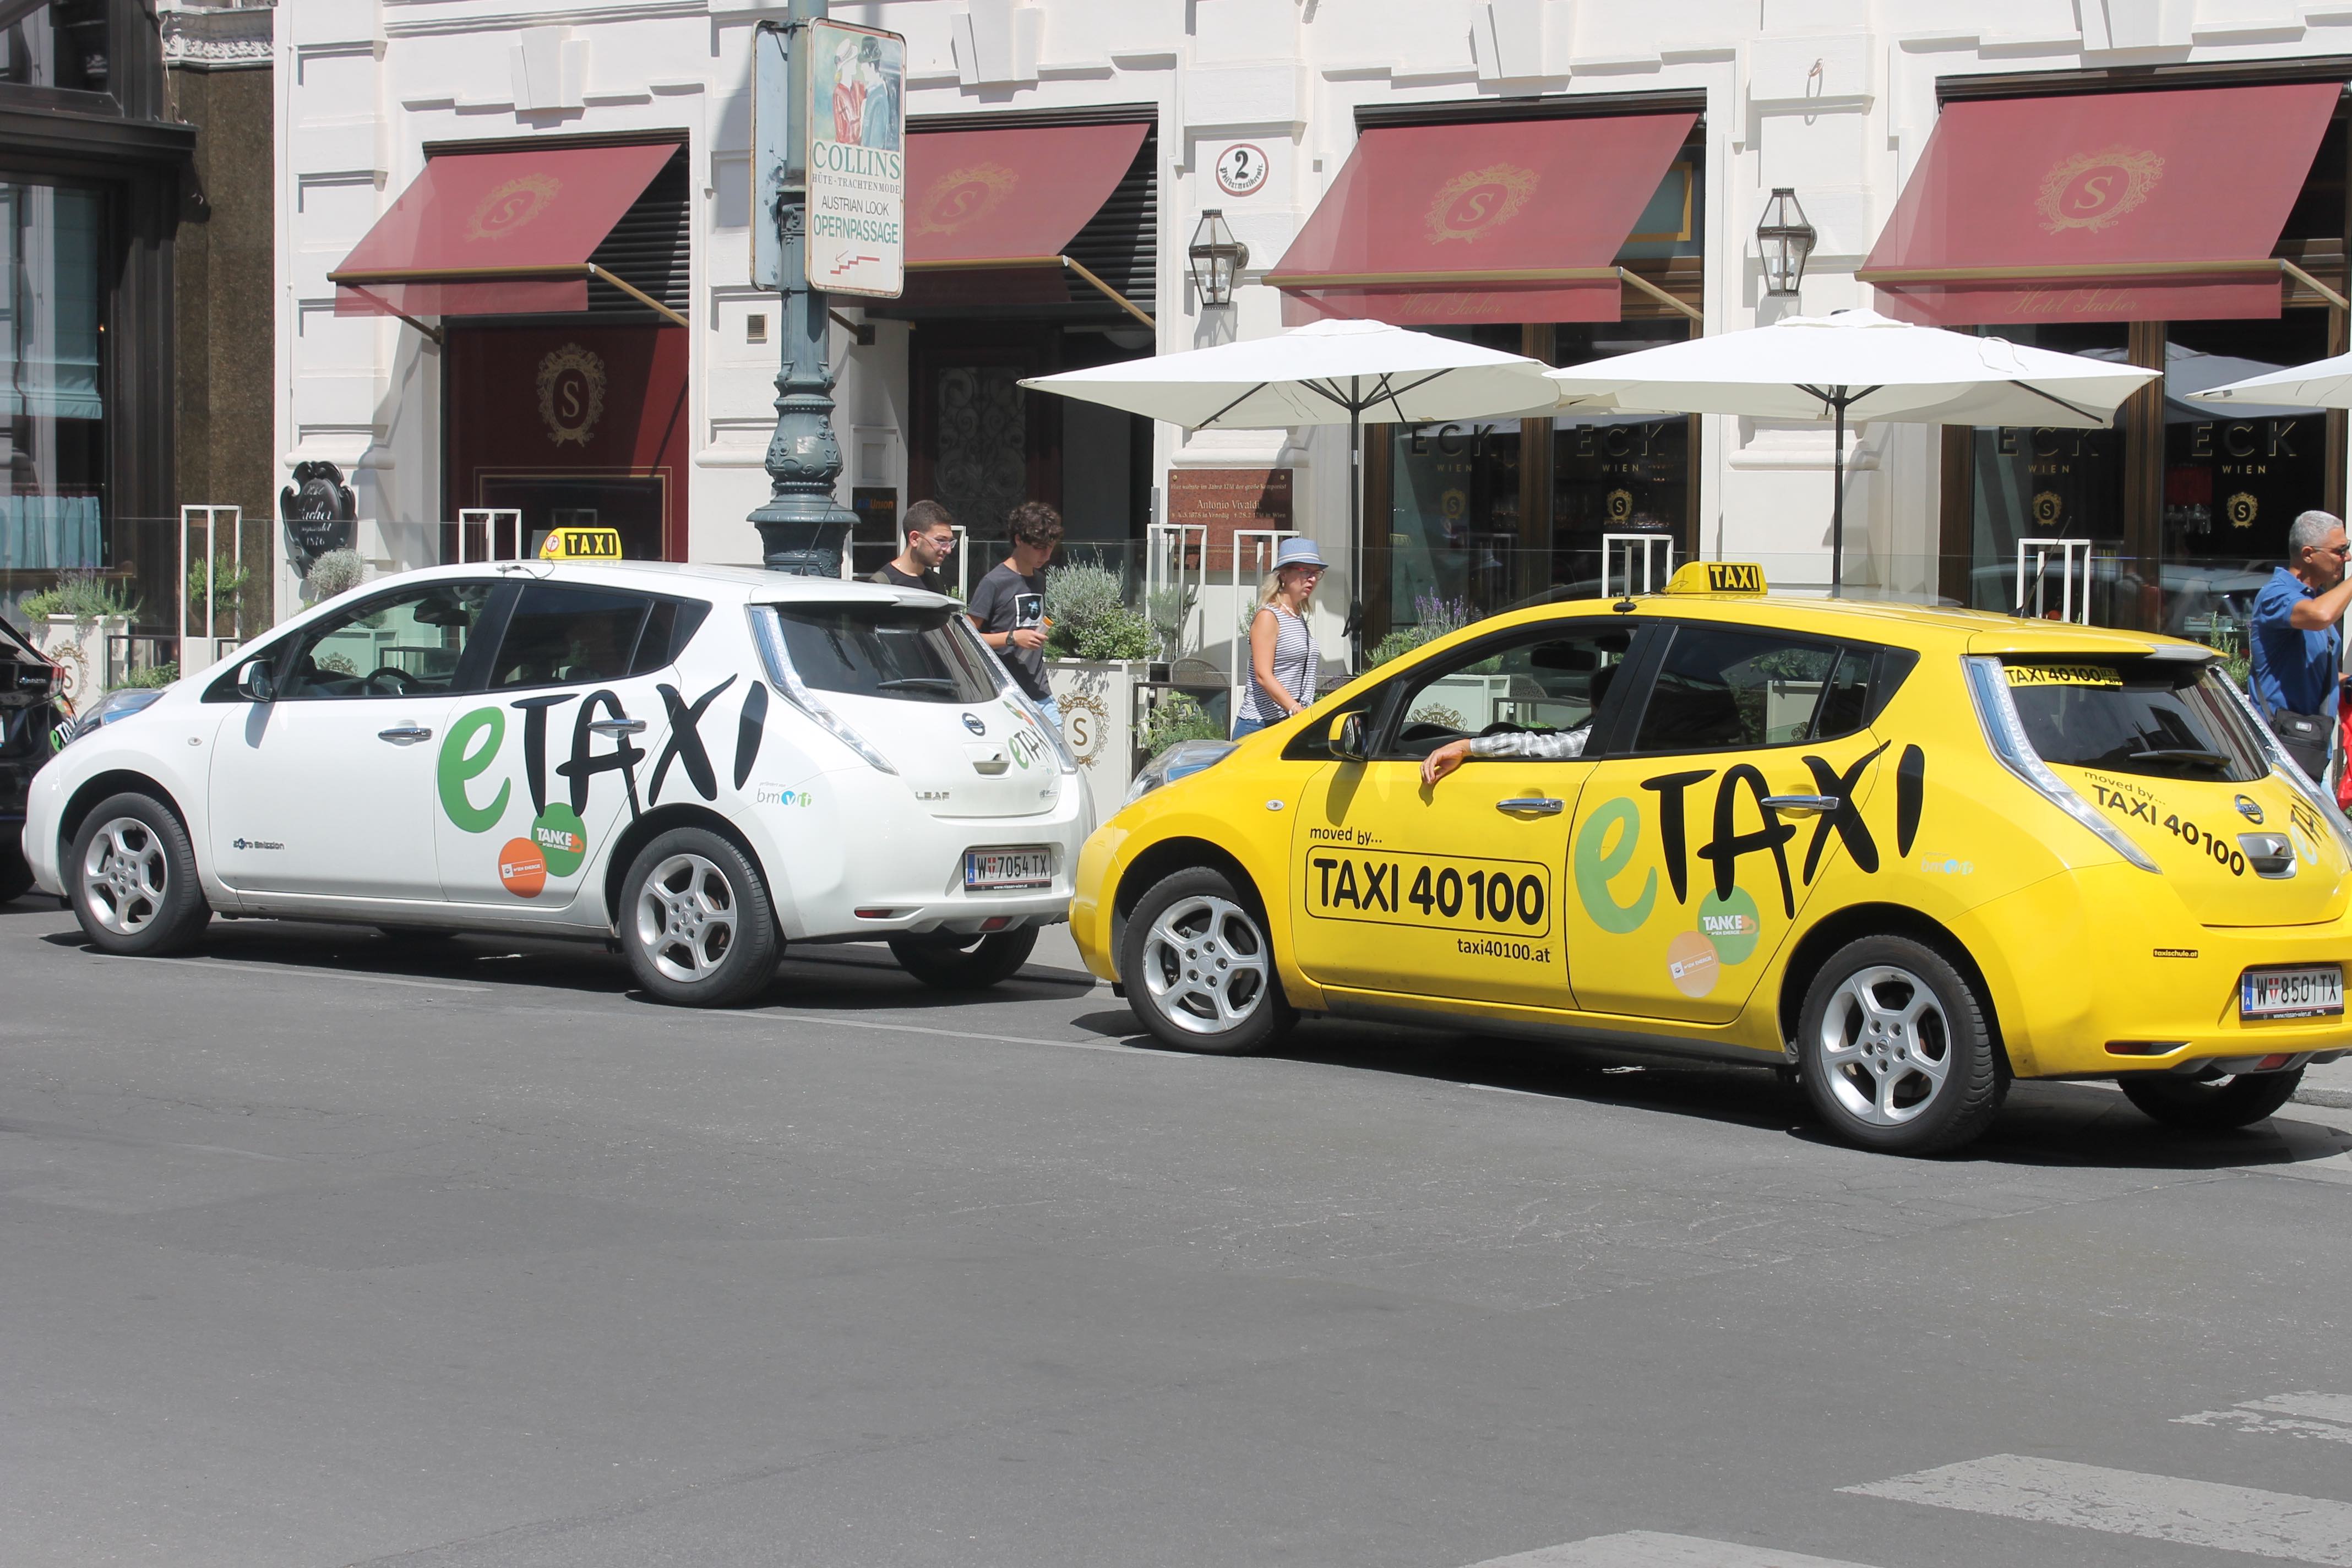 Blog: Mobilność w Wiedniu wykracza znacznie dalej niż e-Taxi…